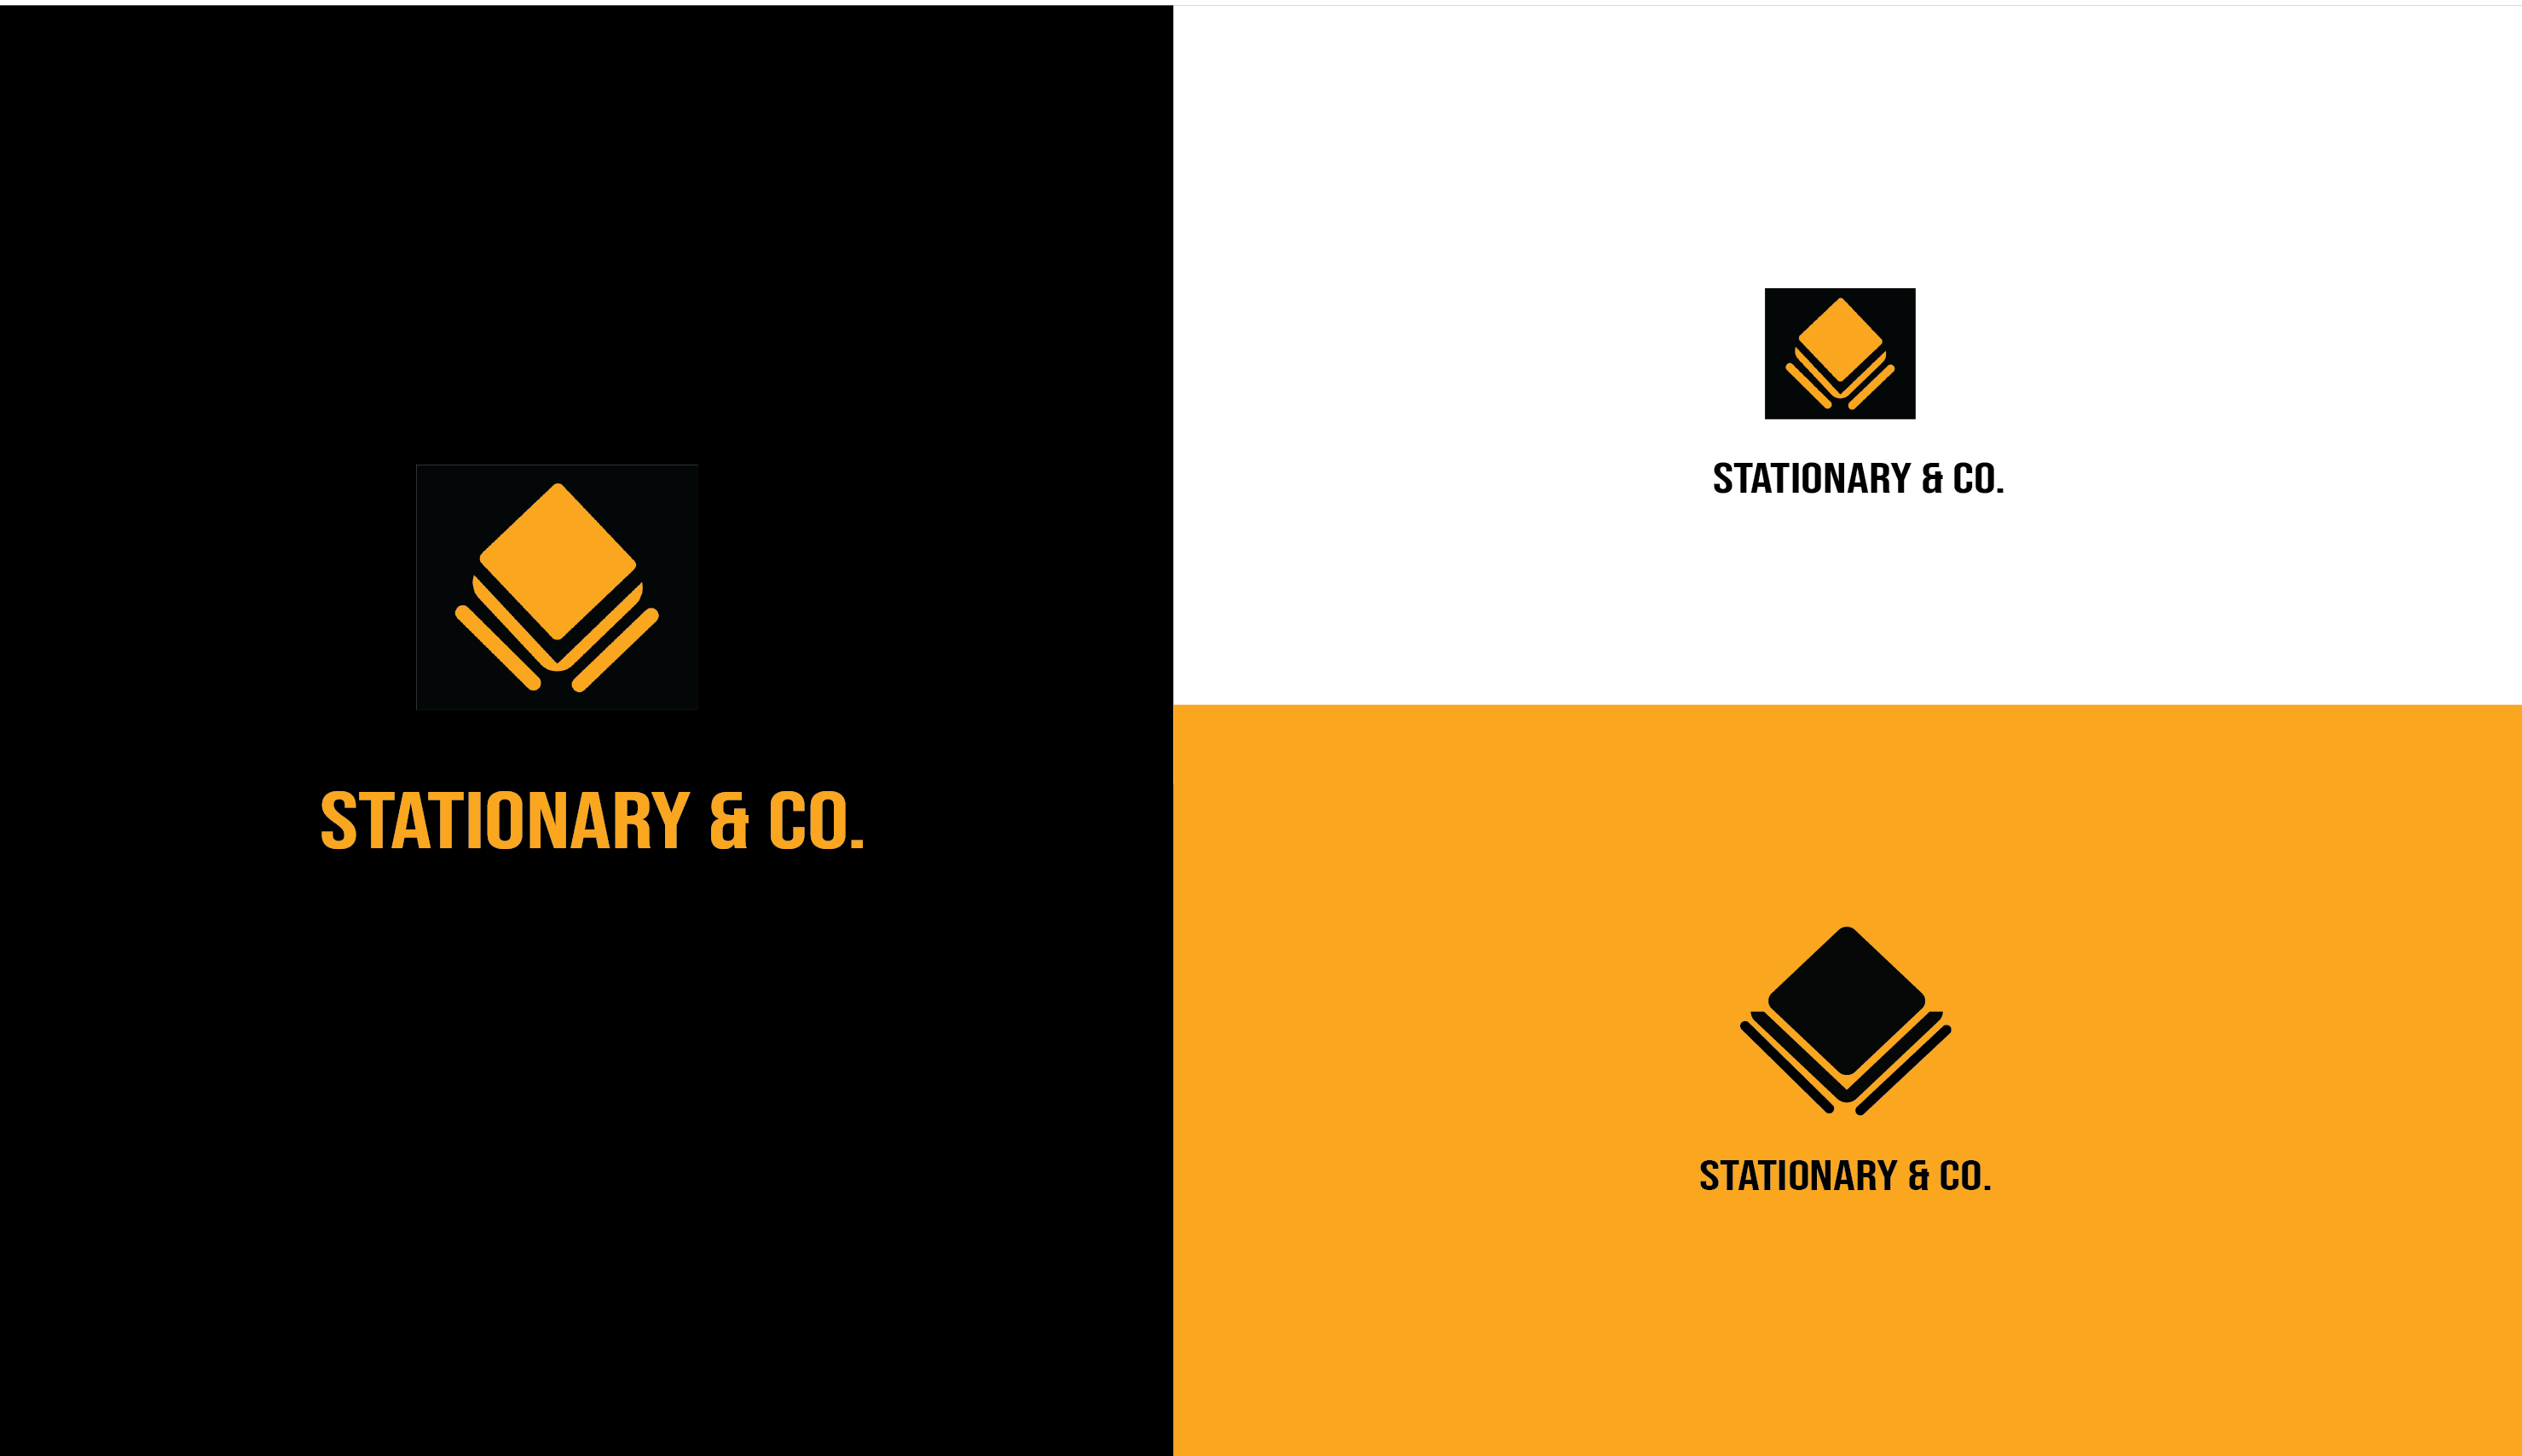 Stationary & Co logo mark/ logo